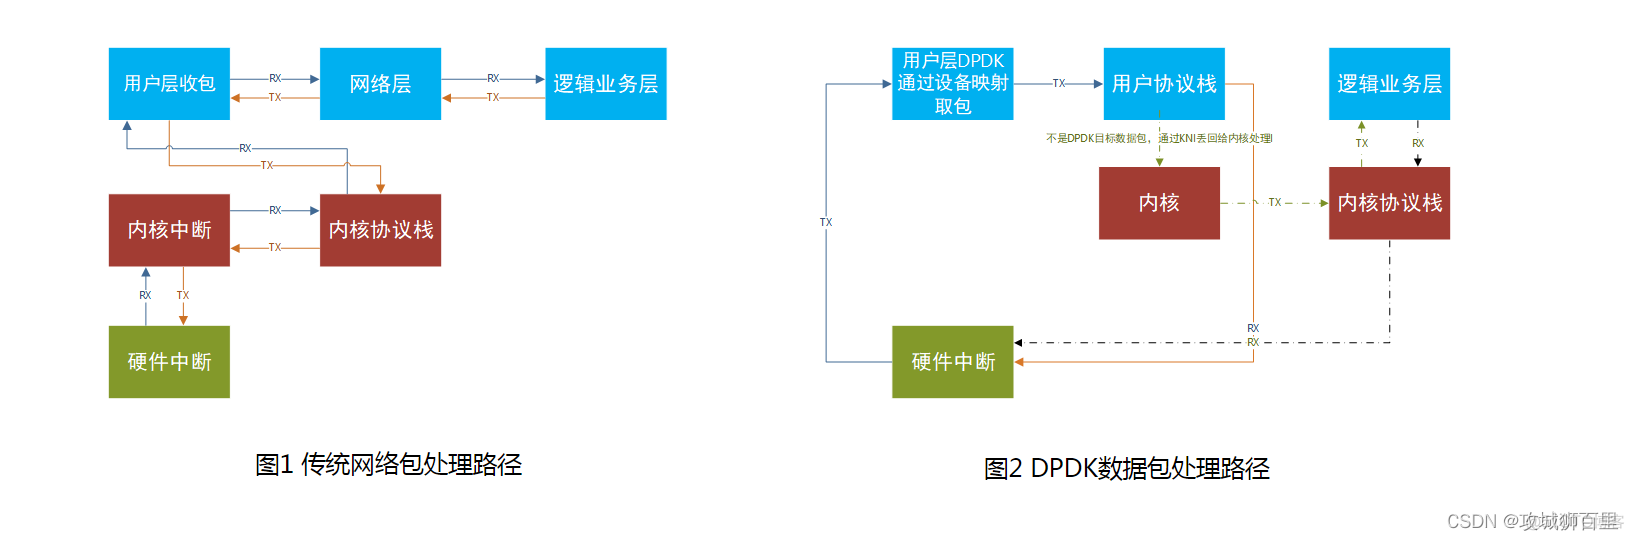 基于DPDK的高效包处理系统_用户态